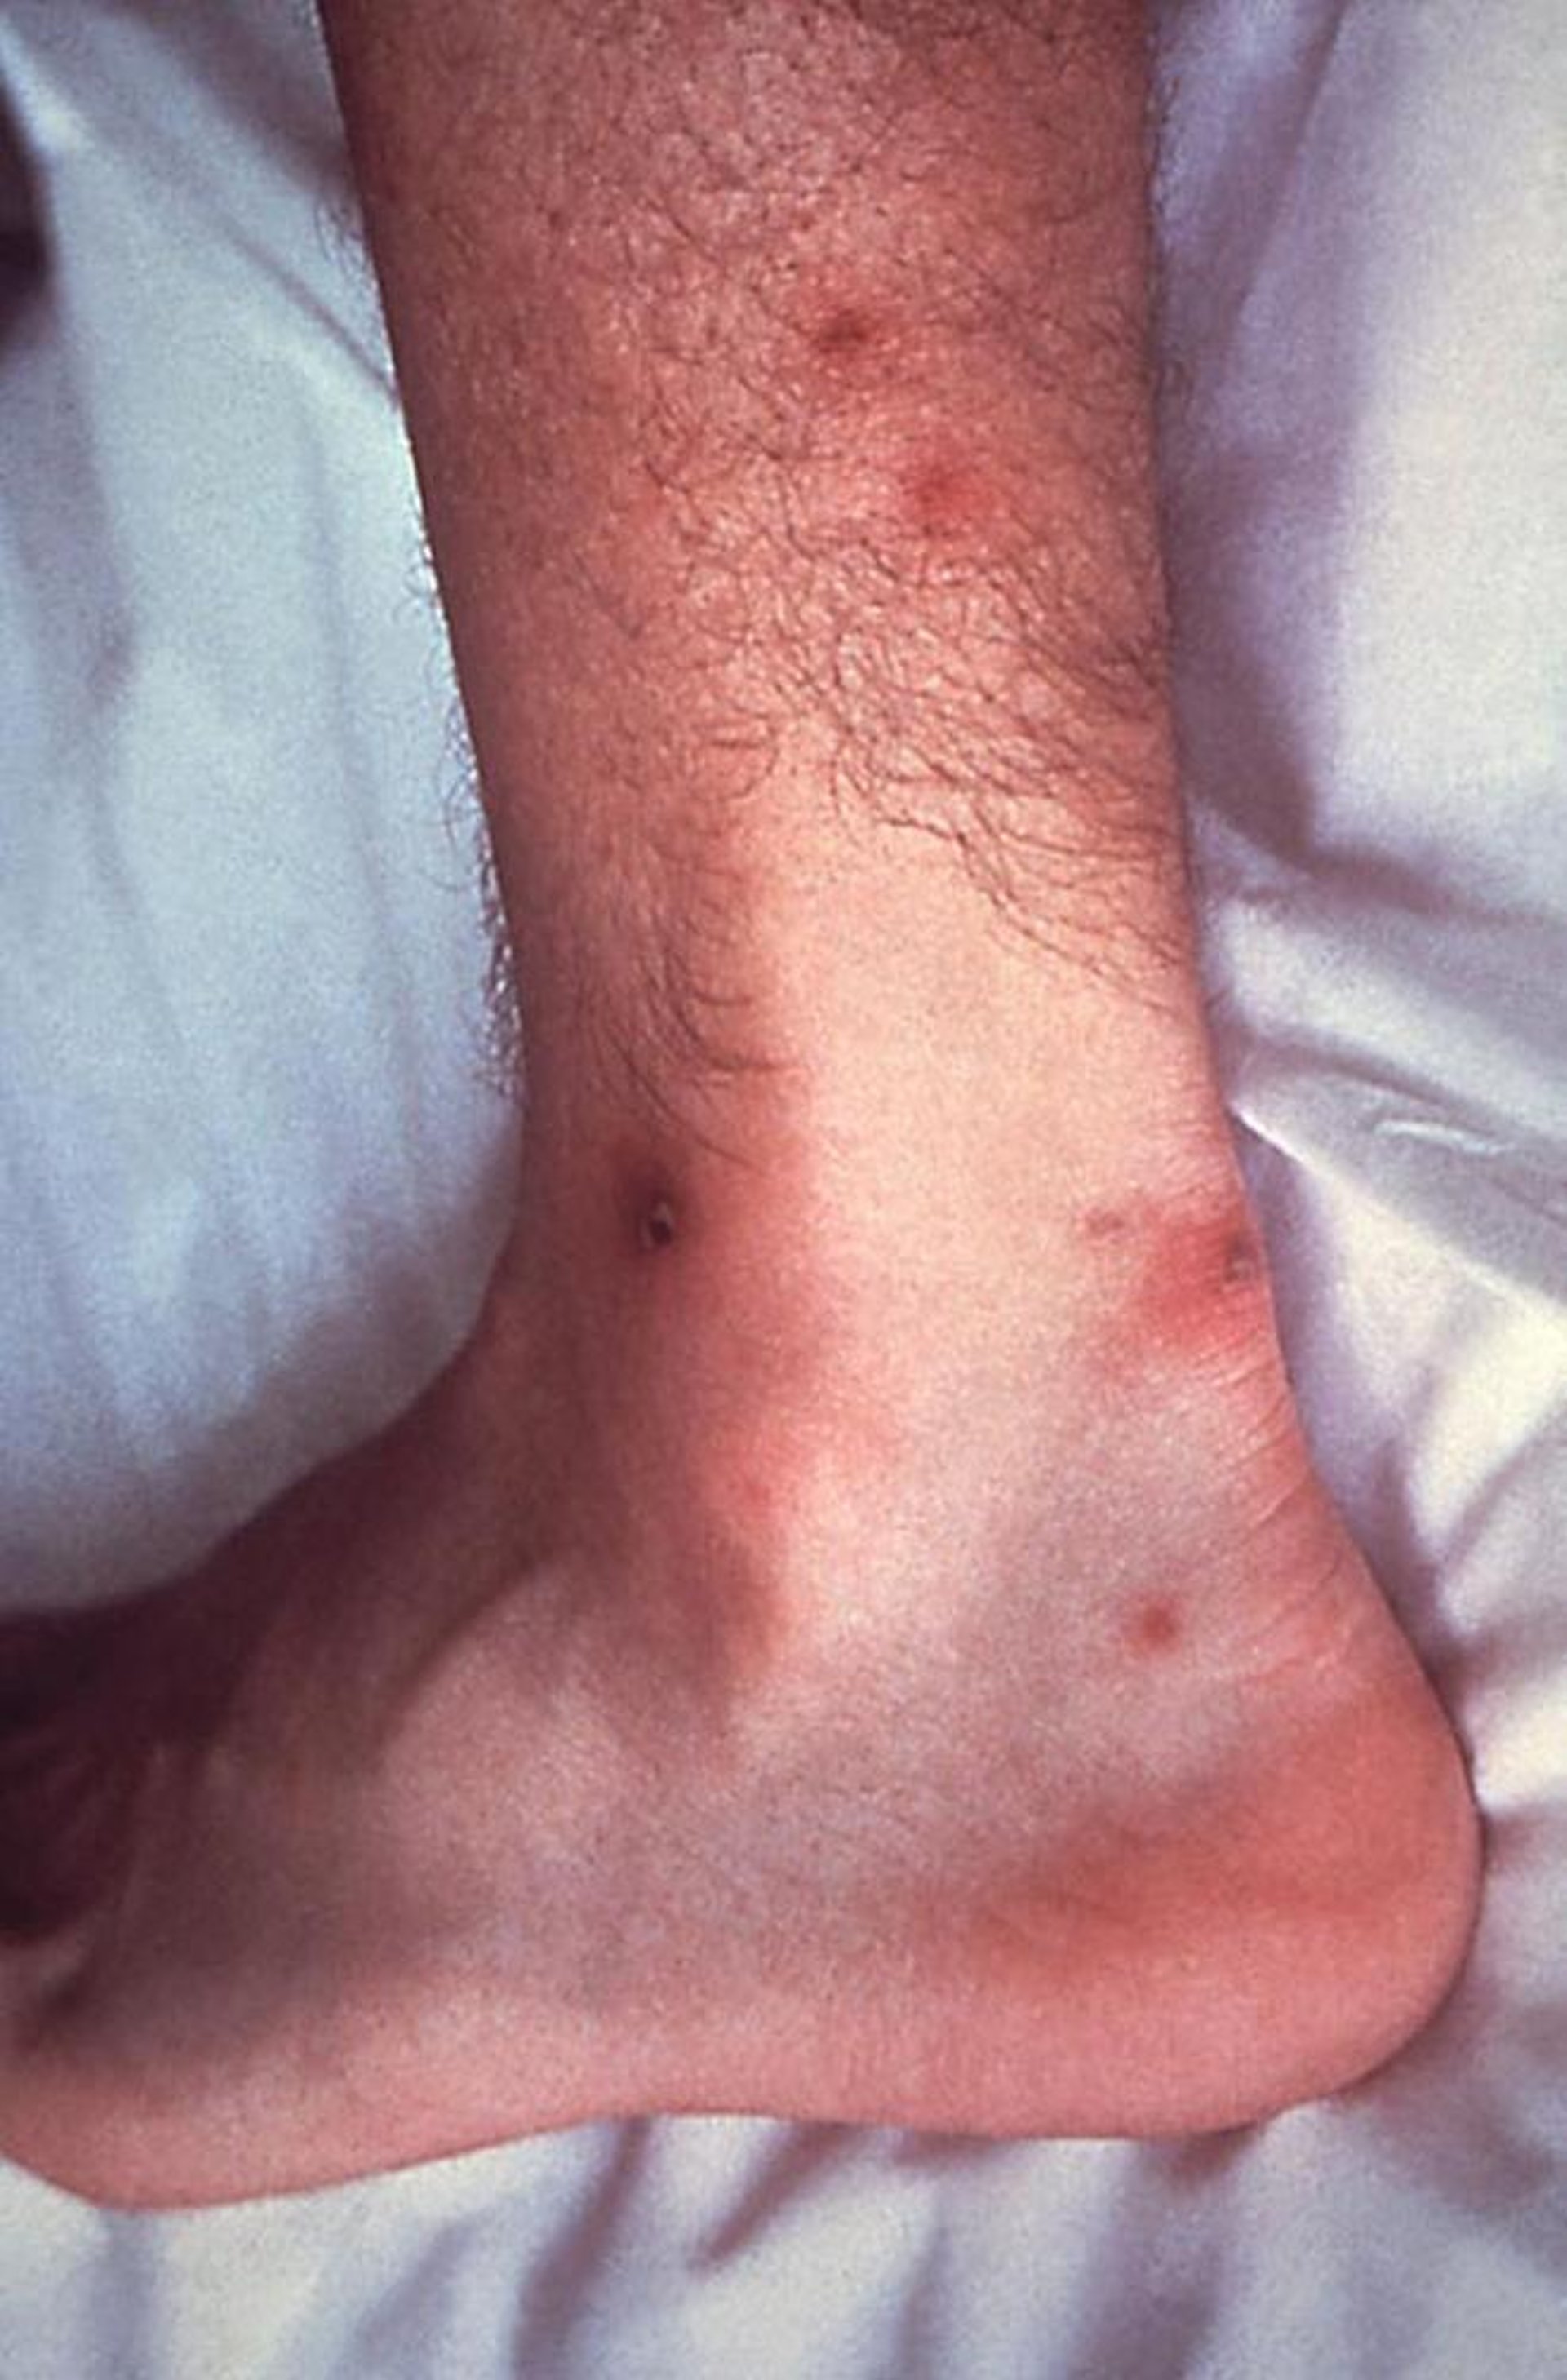 Infezione gonococcica disseminata che interessa la pelle